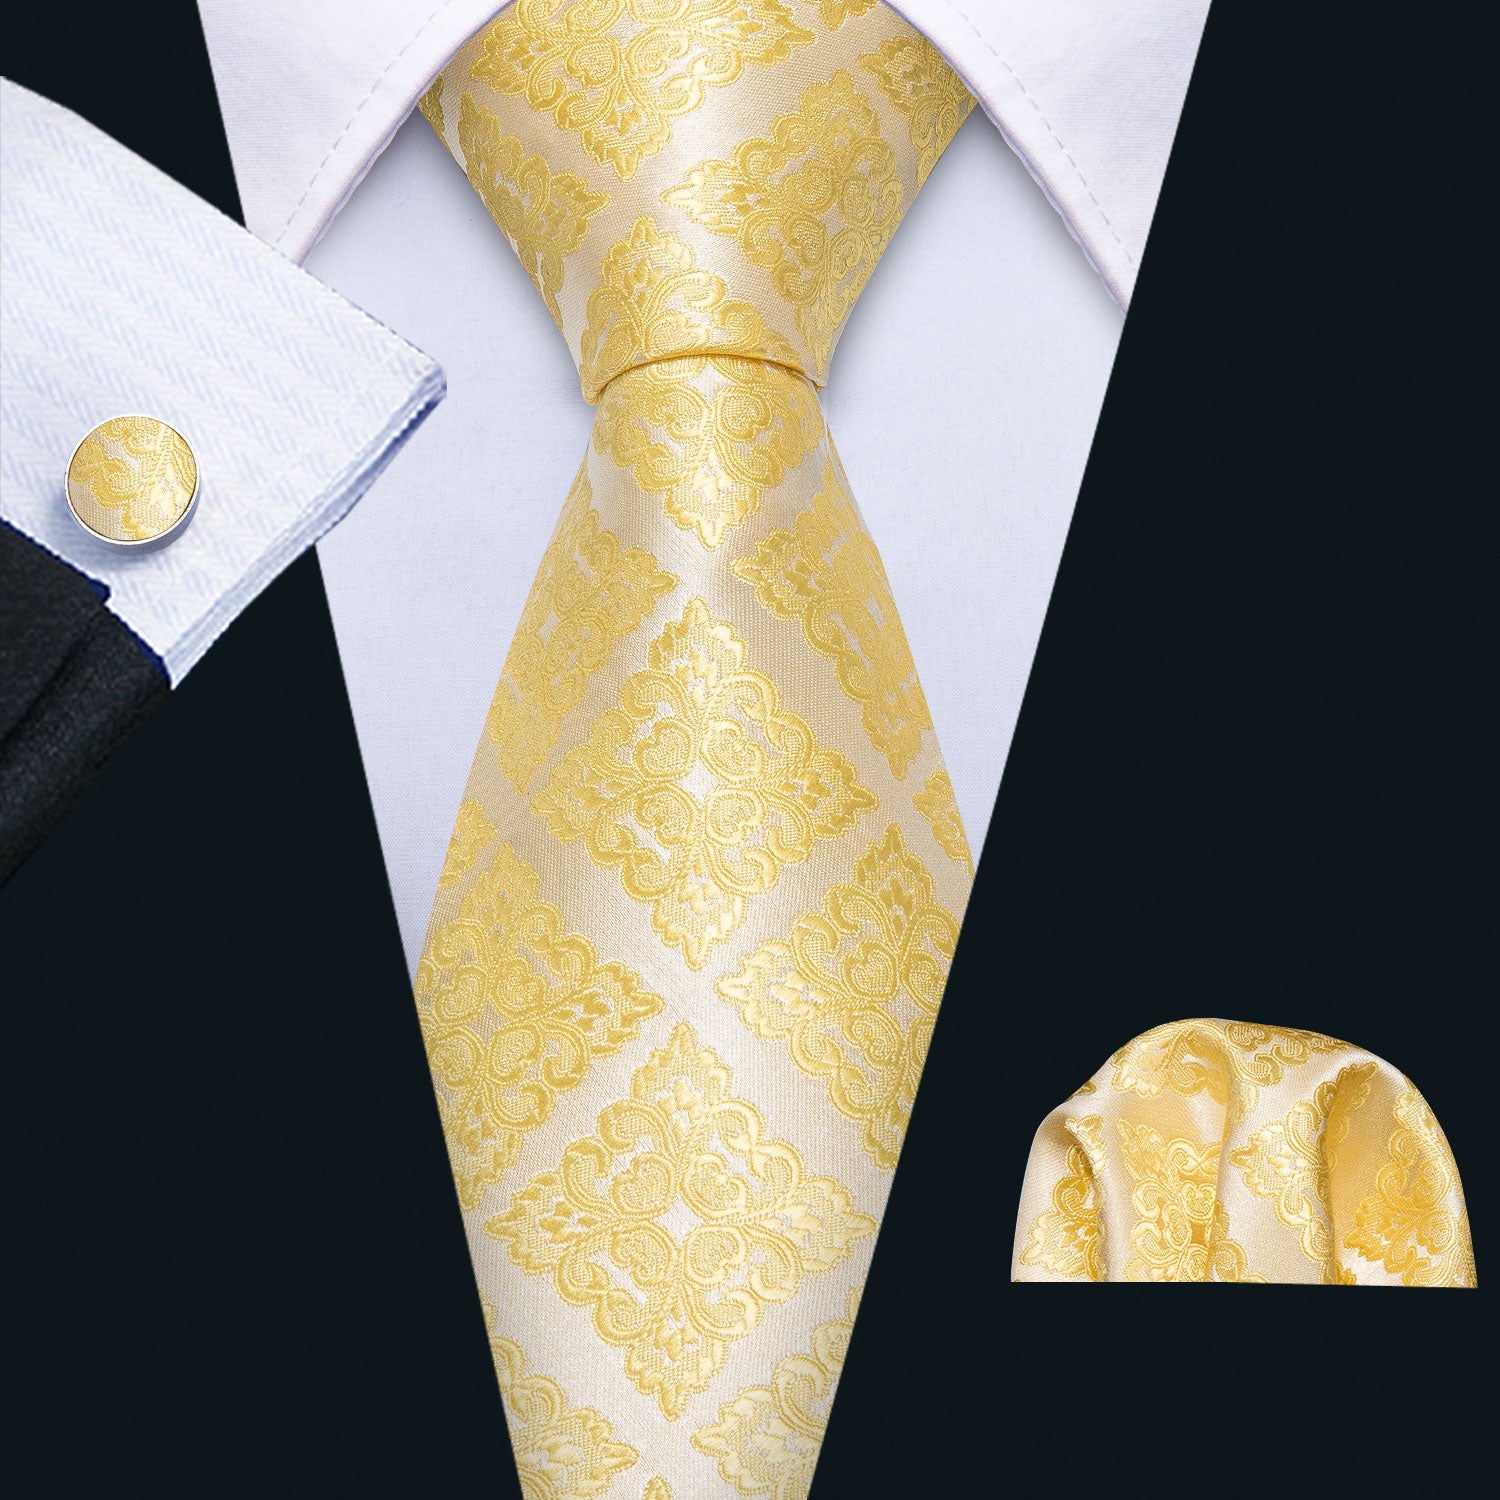 Golden Floral Tie Pocket Square Cufflinks Set